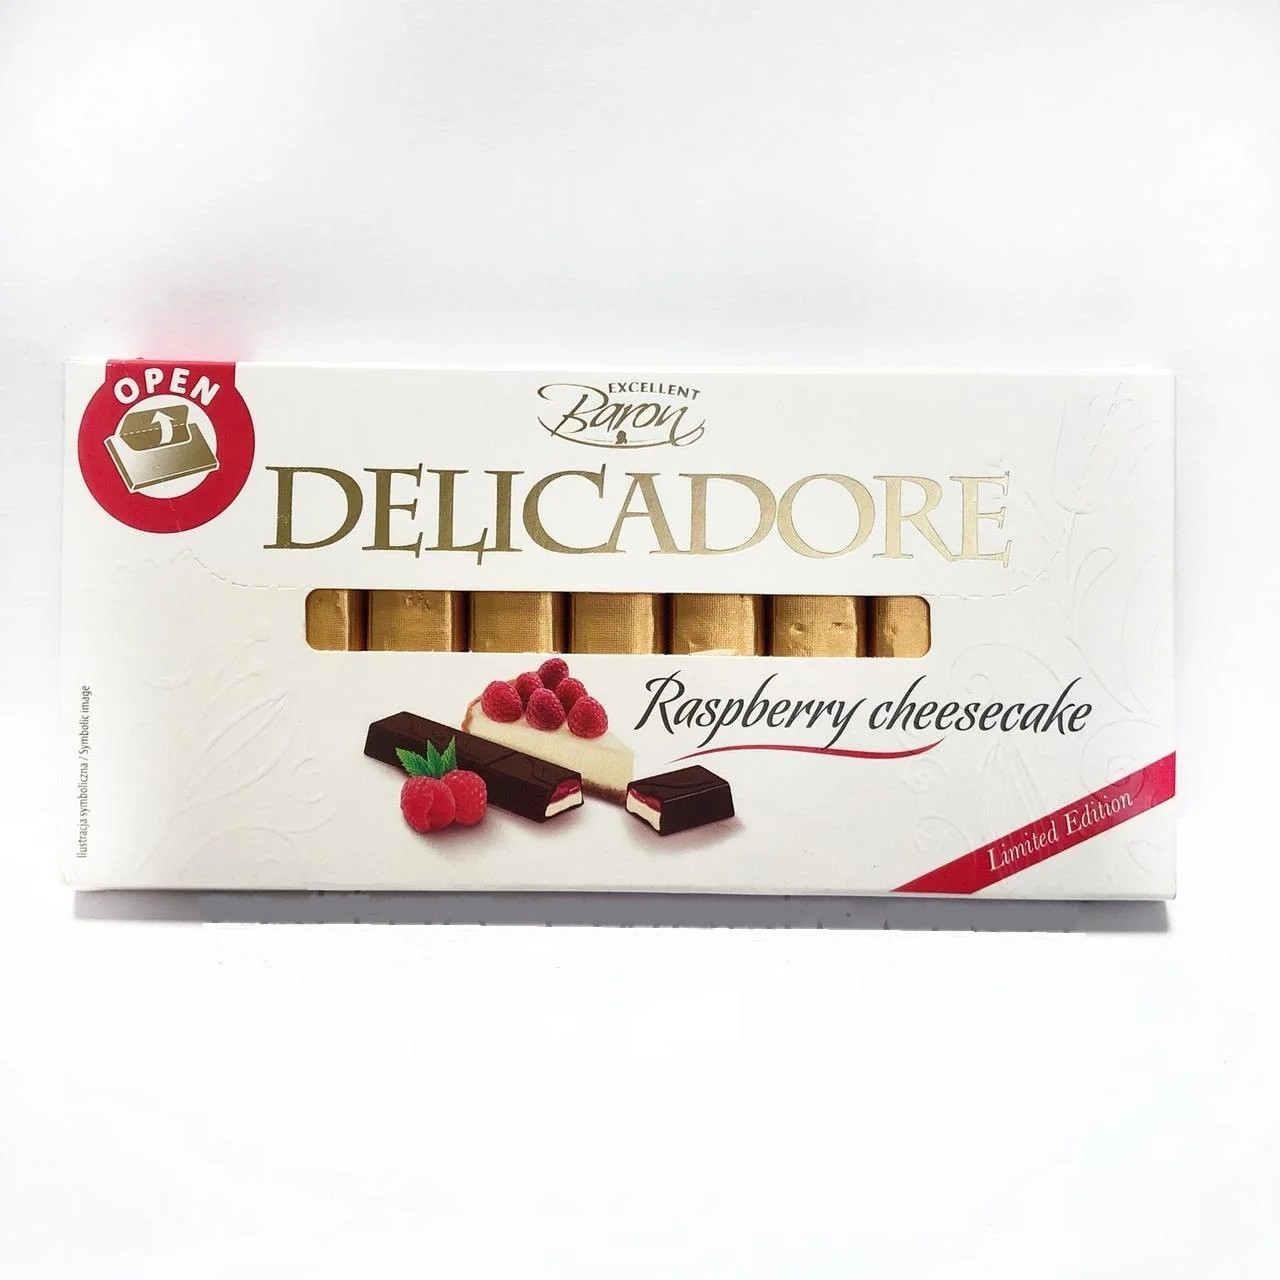 5-шоколад Делікадор малина 200 г.Delicadore